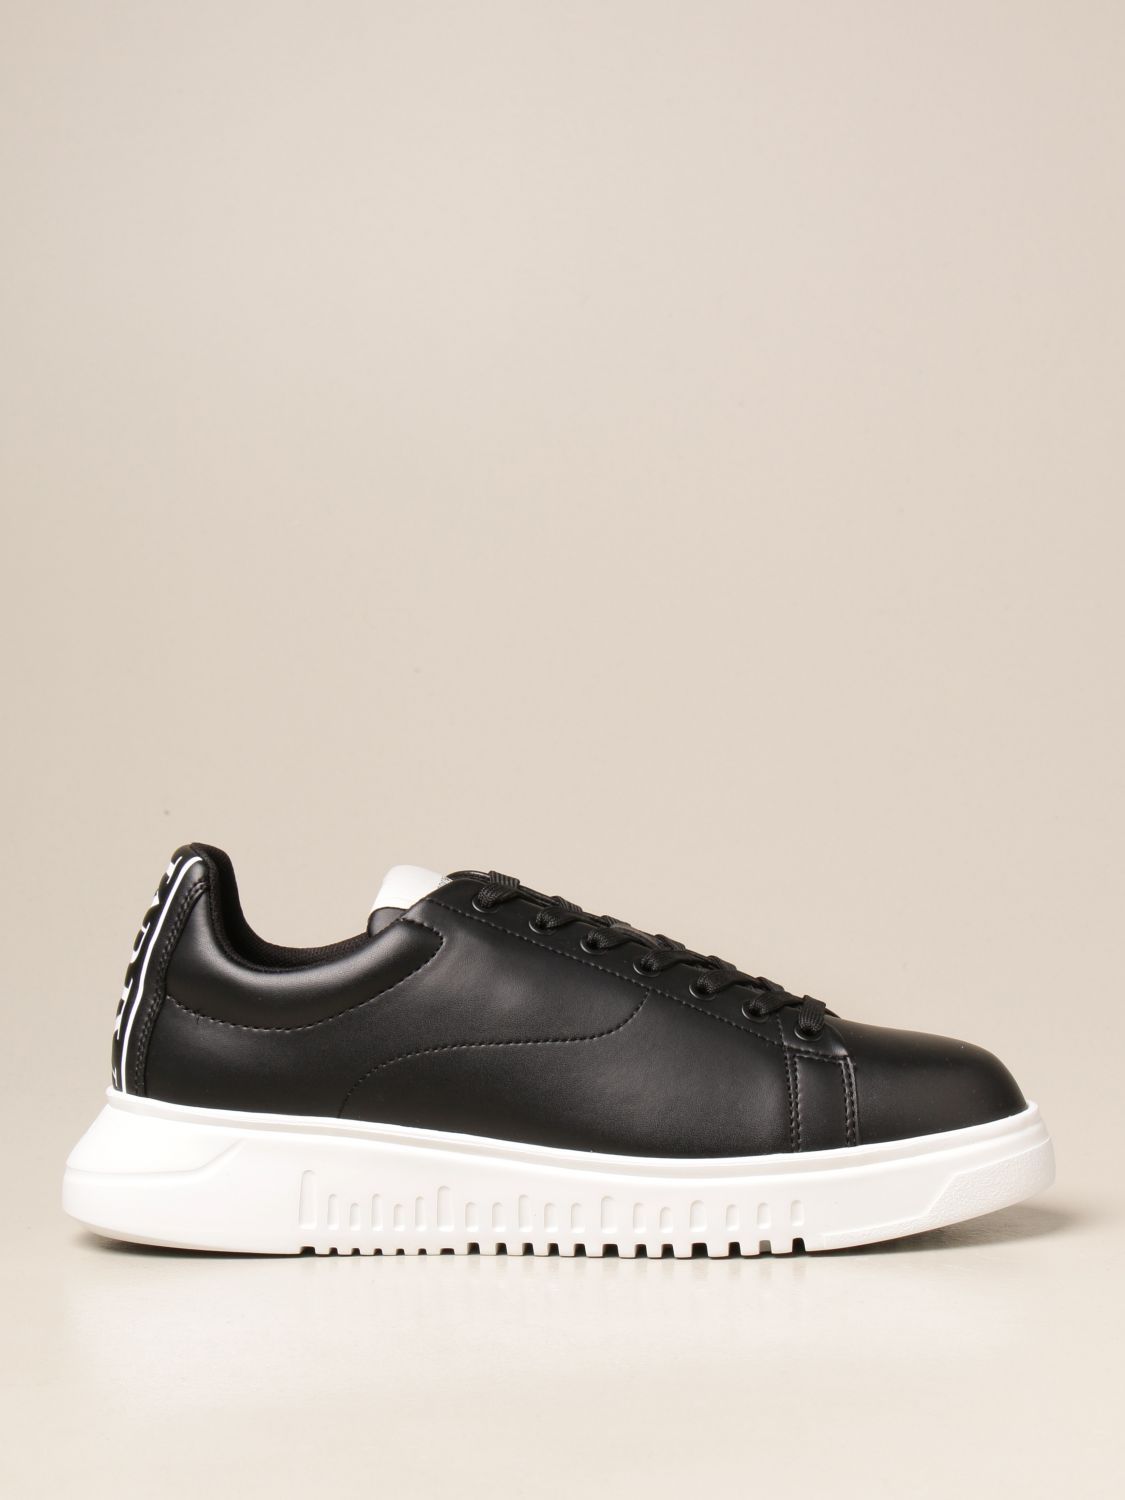 EMPORIO ARMANI: sneakers in rubberized leather | Sneakers Armani Black | Sneakers Emporio Armani X4X312 XM747 GIGLIO.COM